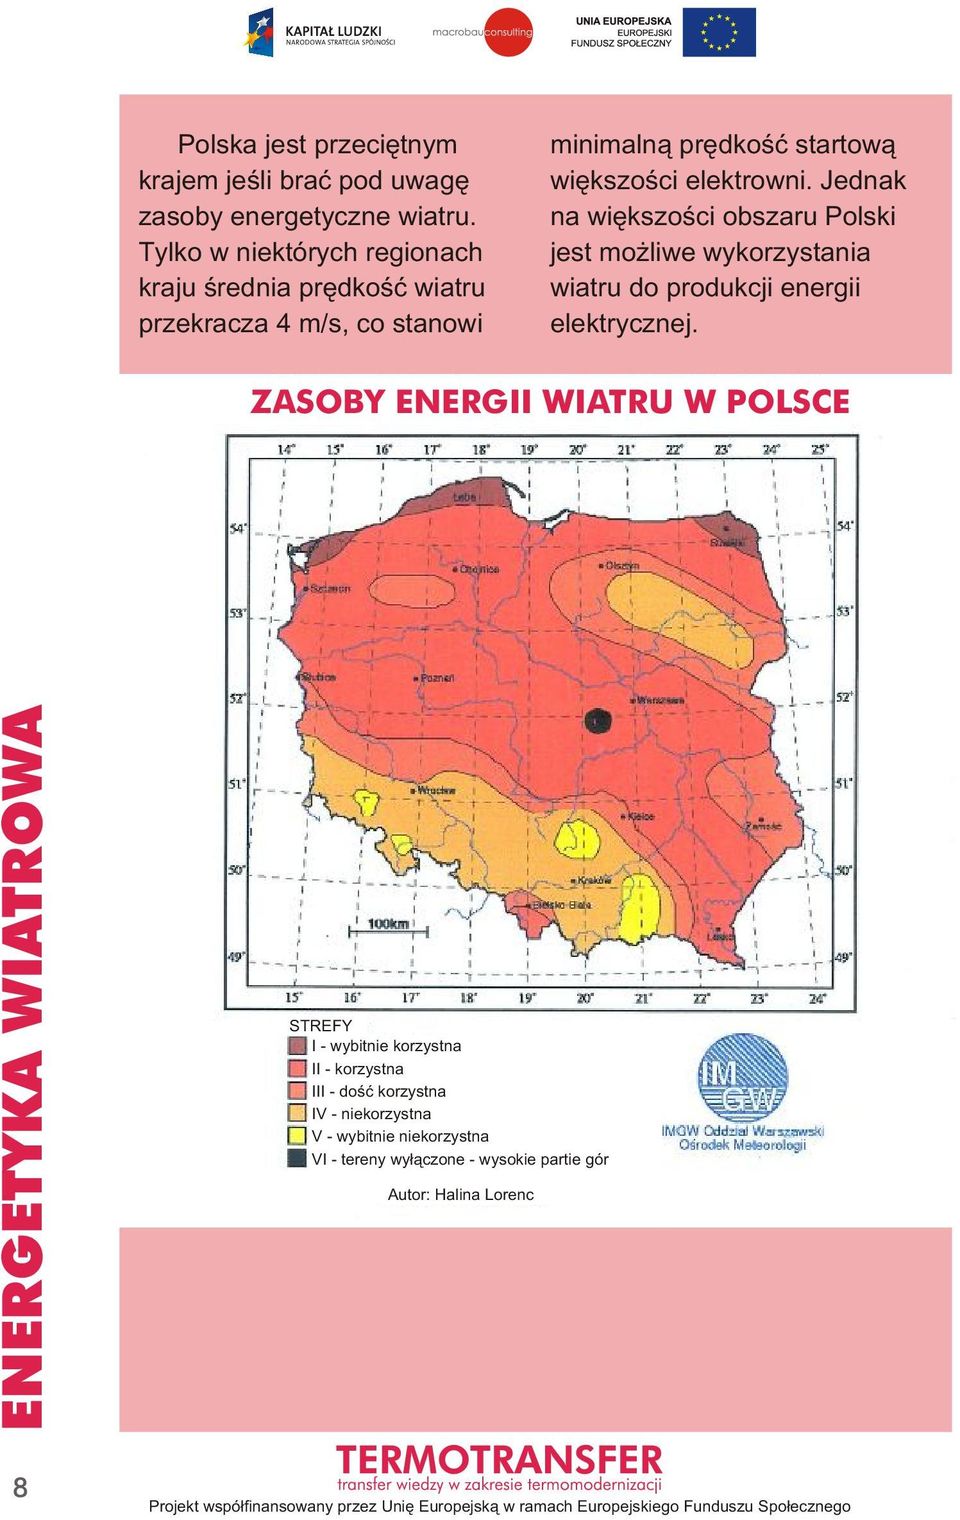 elektrowni. Jednak na większości obszaru Polski jest możliwe wykorzystania wiatru do produkcji energii elektrycznej.